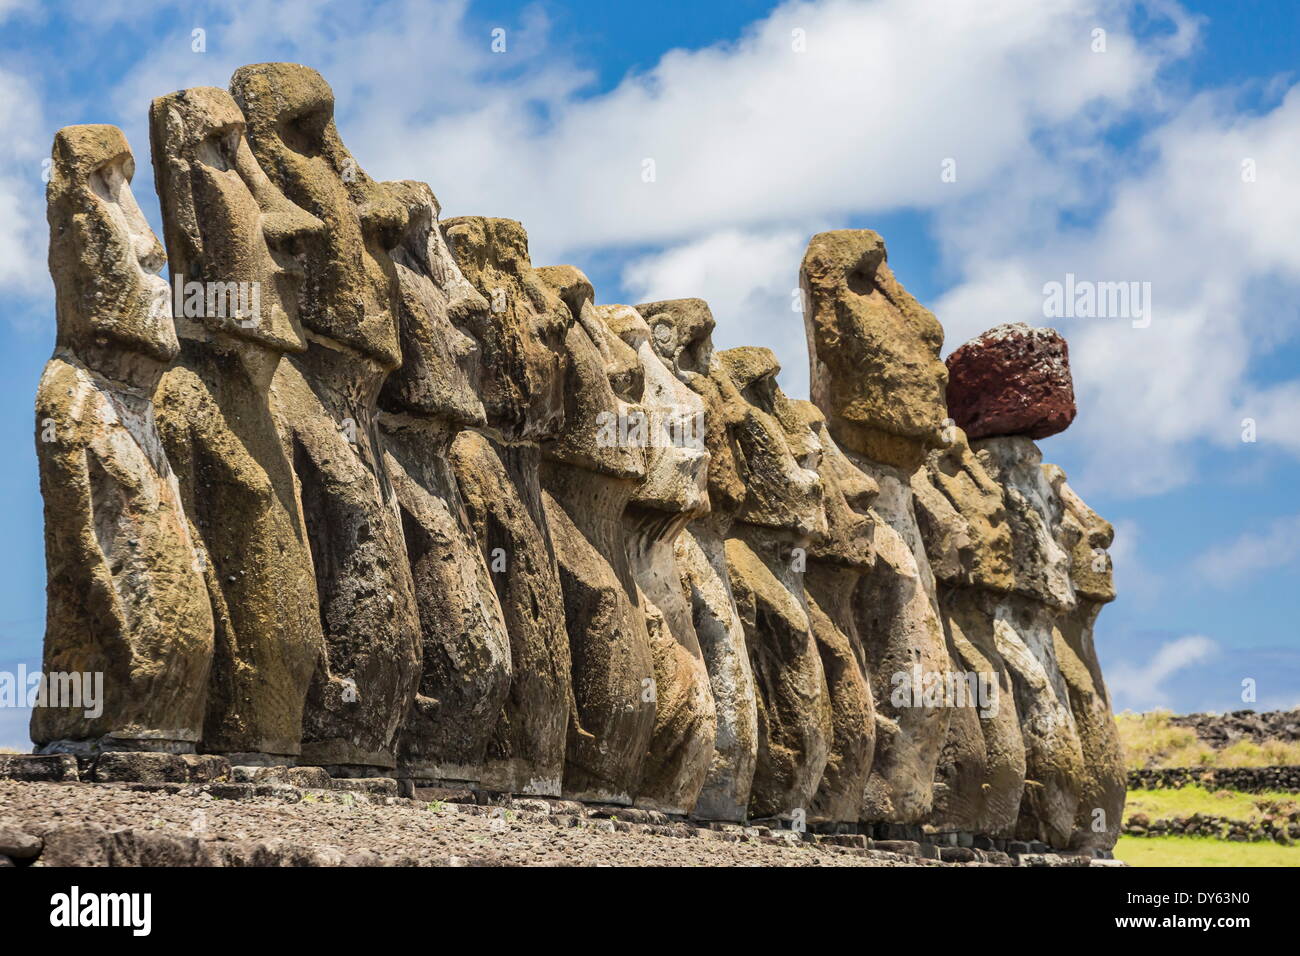 Quince moais restaurados en el sitio ceremonial de Ahu Tongariki en la Isla de Pascua (Isla de Pascua) (Rapa Nui), la UNESCO Sitio, Chile Foto de stock